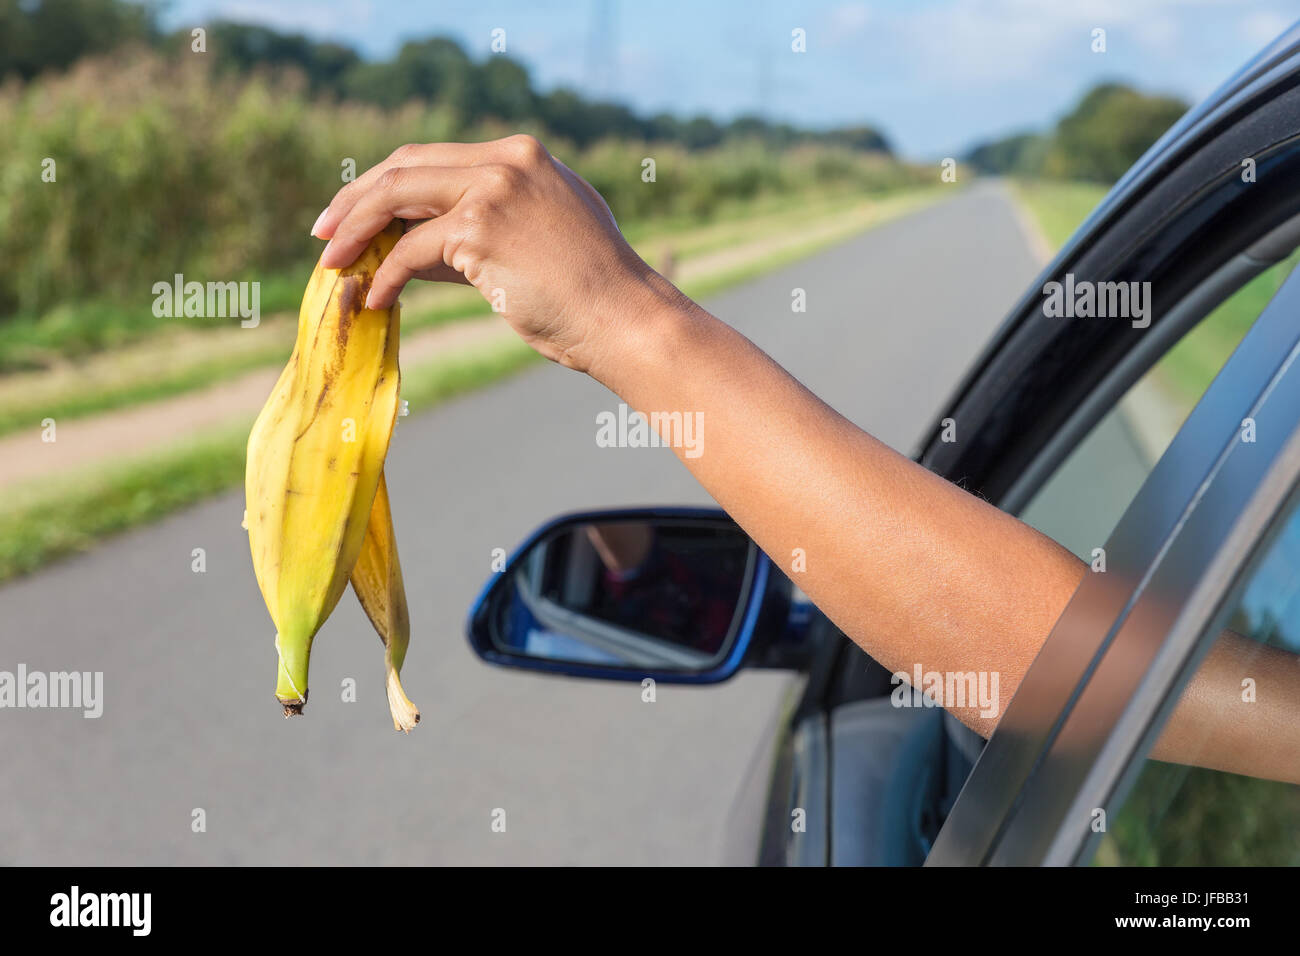 La chute du bras de banana peel out car window Banque D'Images